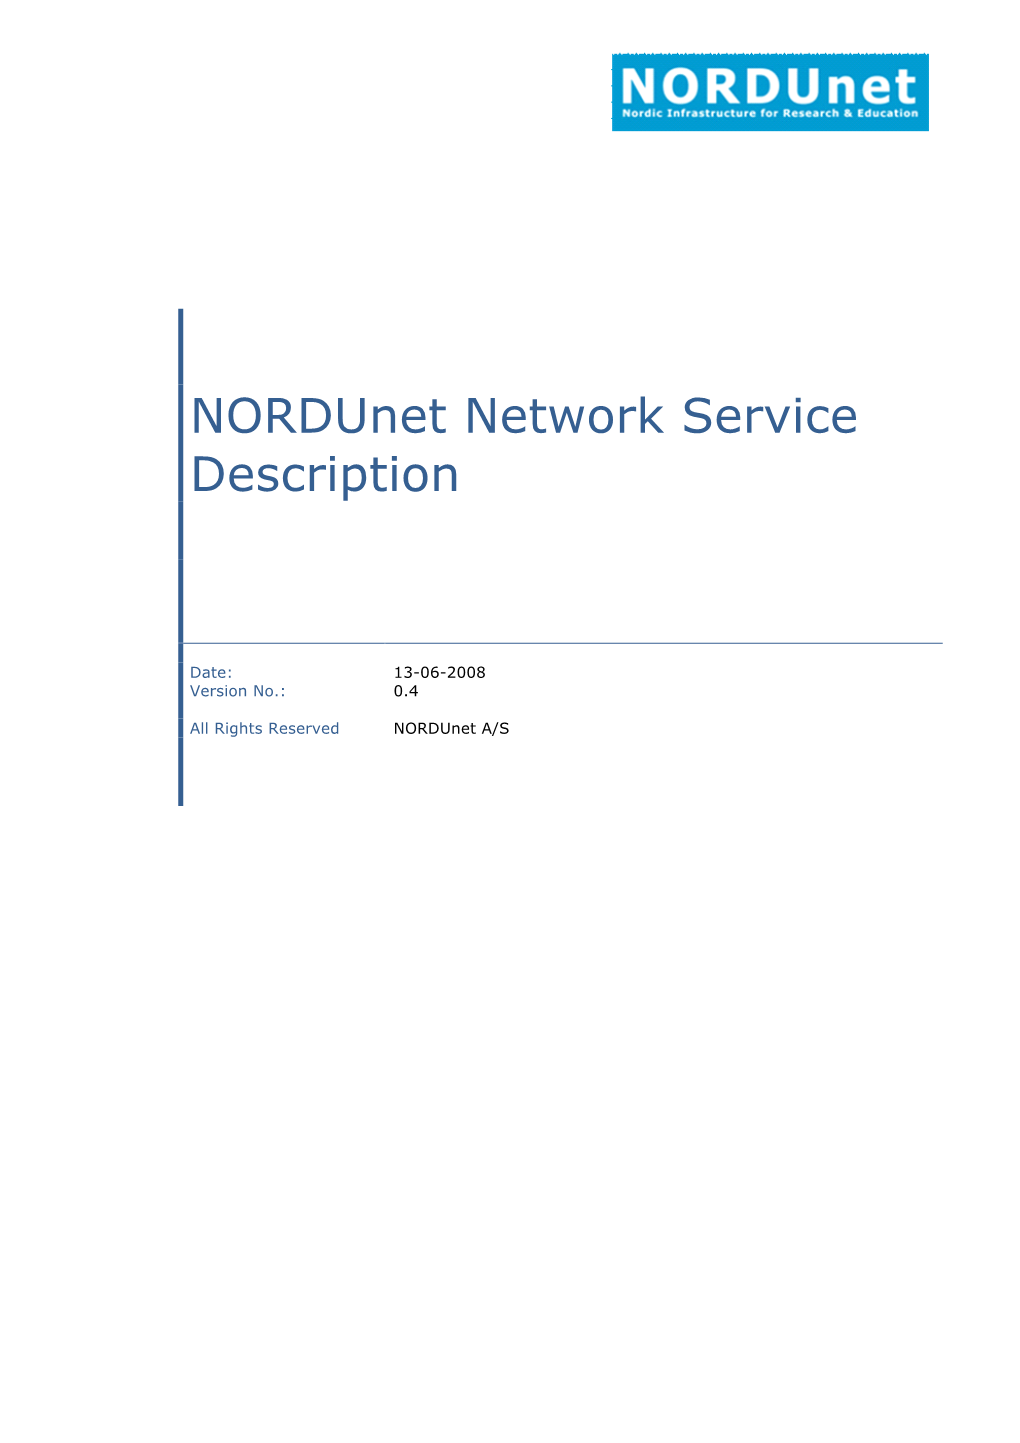 Nordunet Network Service Description